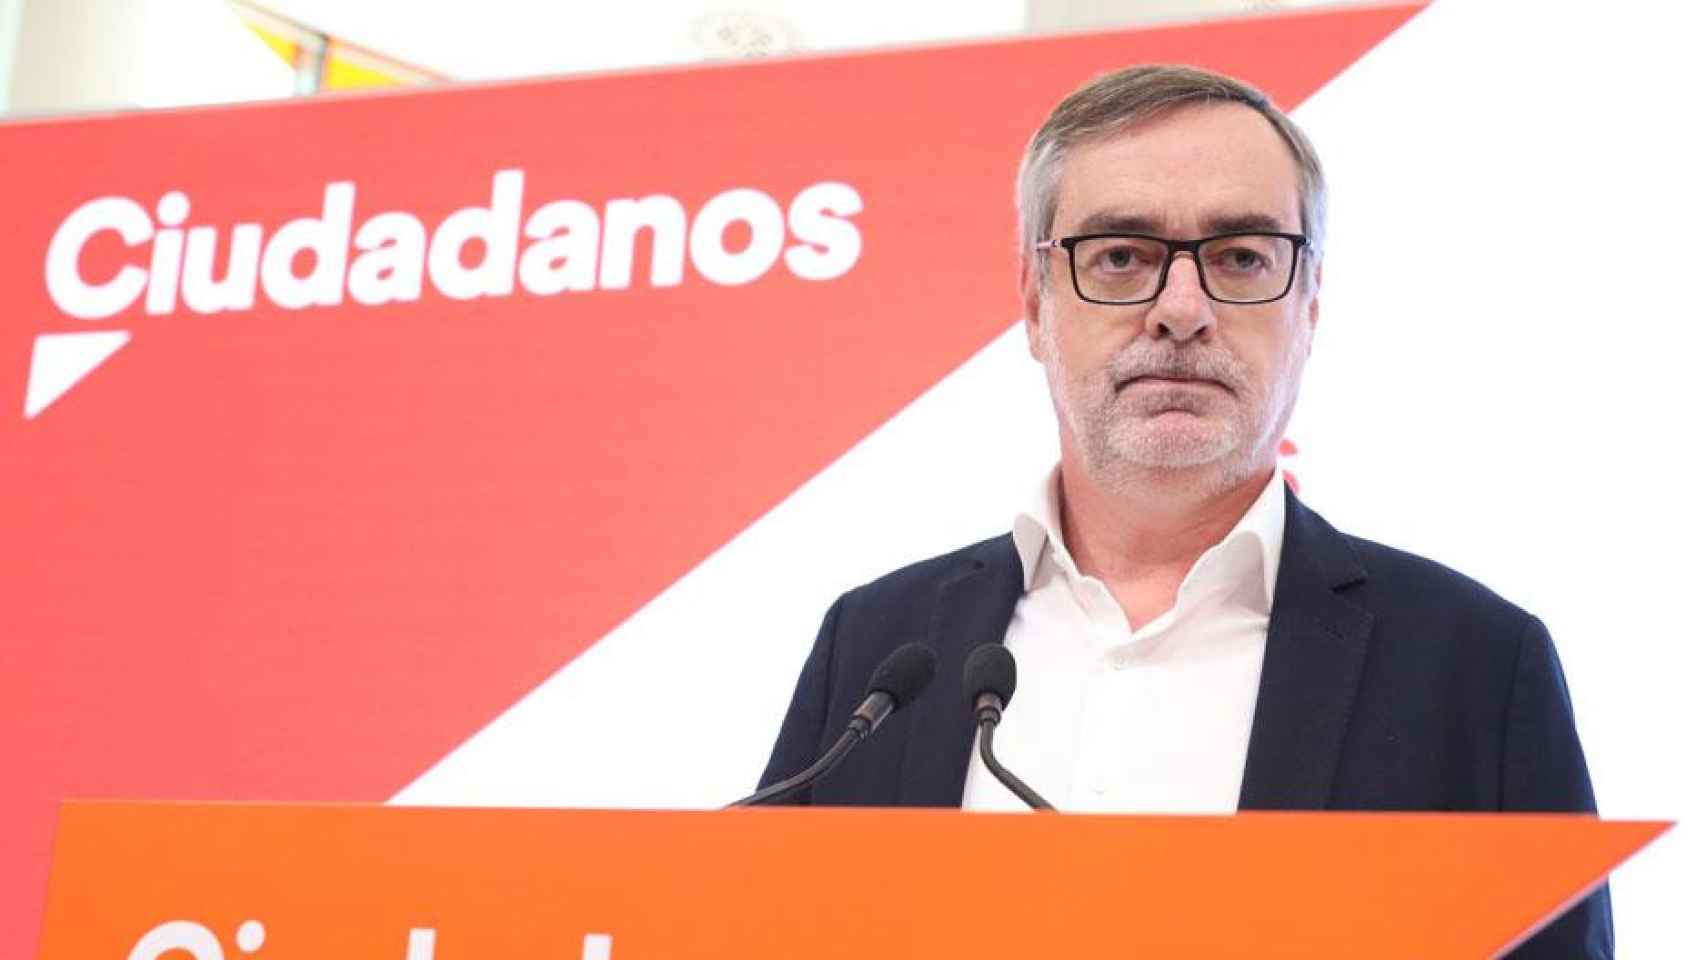 El secretario general de Ciudadanos, José Manuel Villegas, que ha anunciado su dimisión / EUROPA PRESS